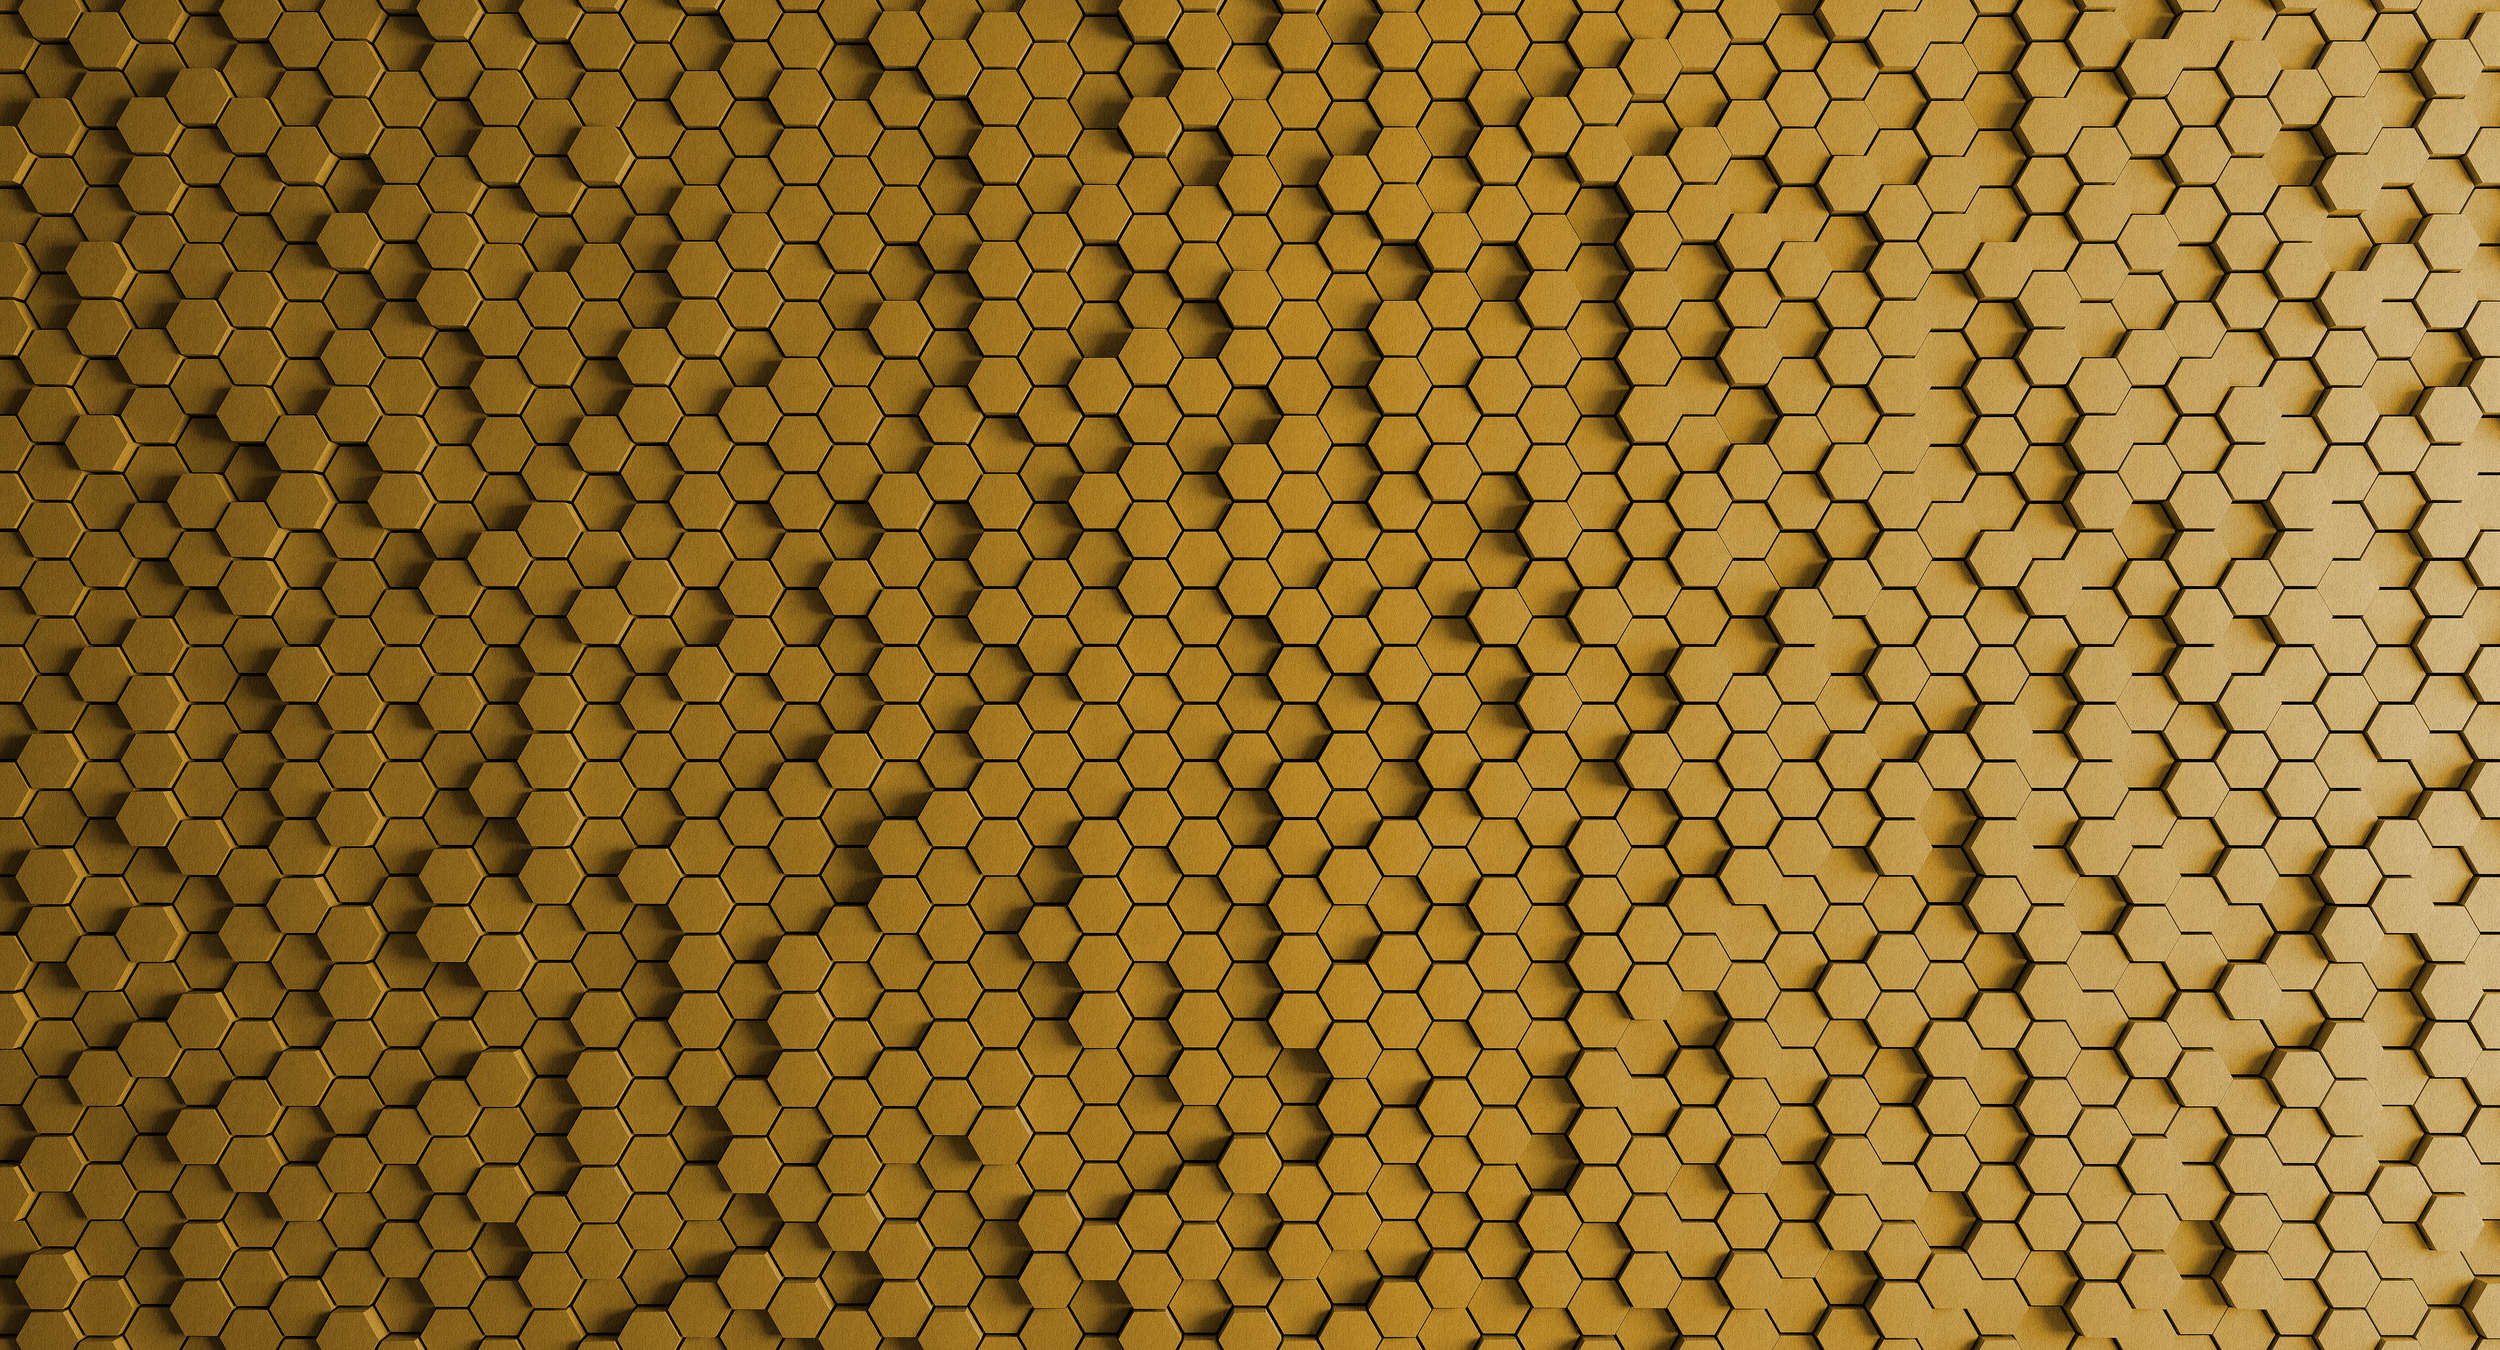             Honeycomb 1 - Carta da parati 3D con disegno a nido d'ape giallo in struttura di feltro - Giallo, nero | Vello liscio premium
        